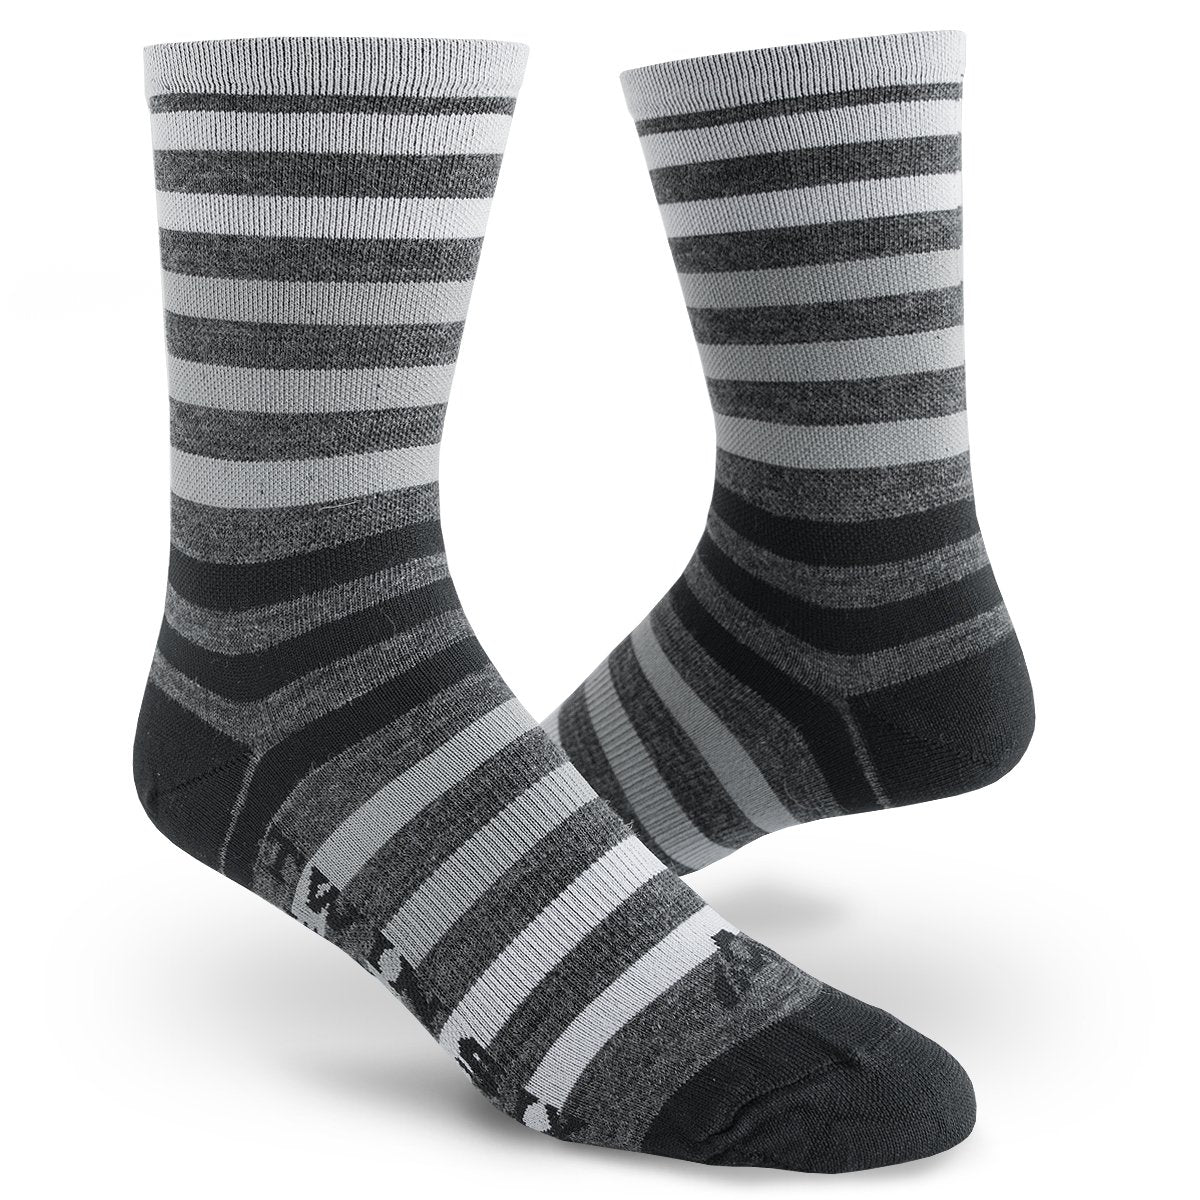 TWINSIX Wool Socks